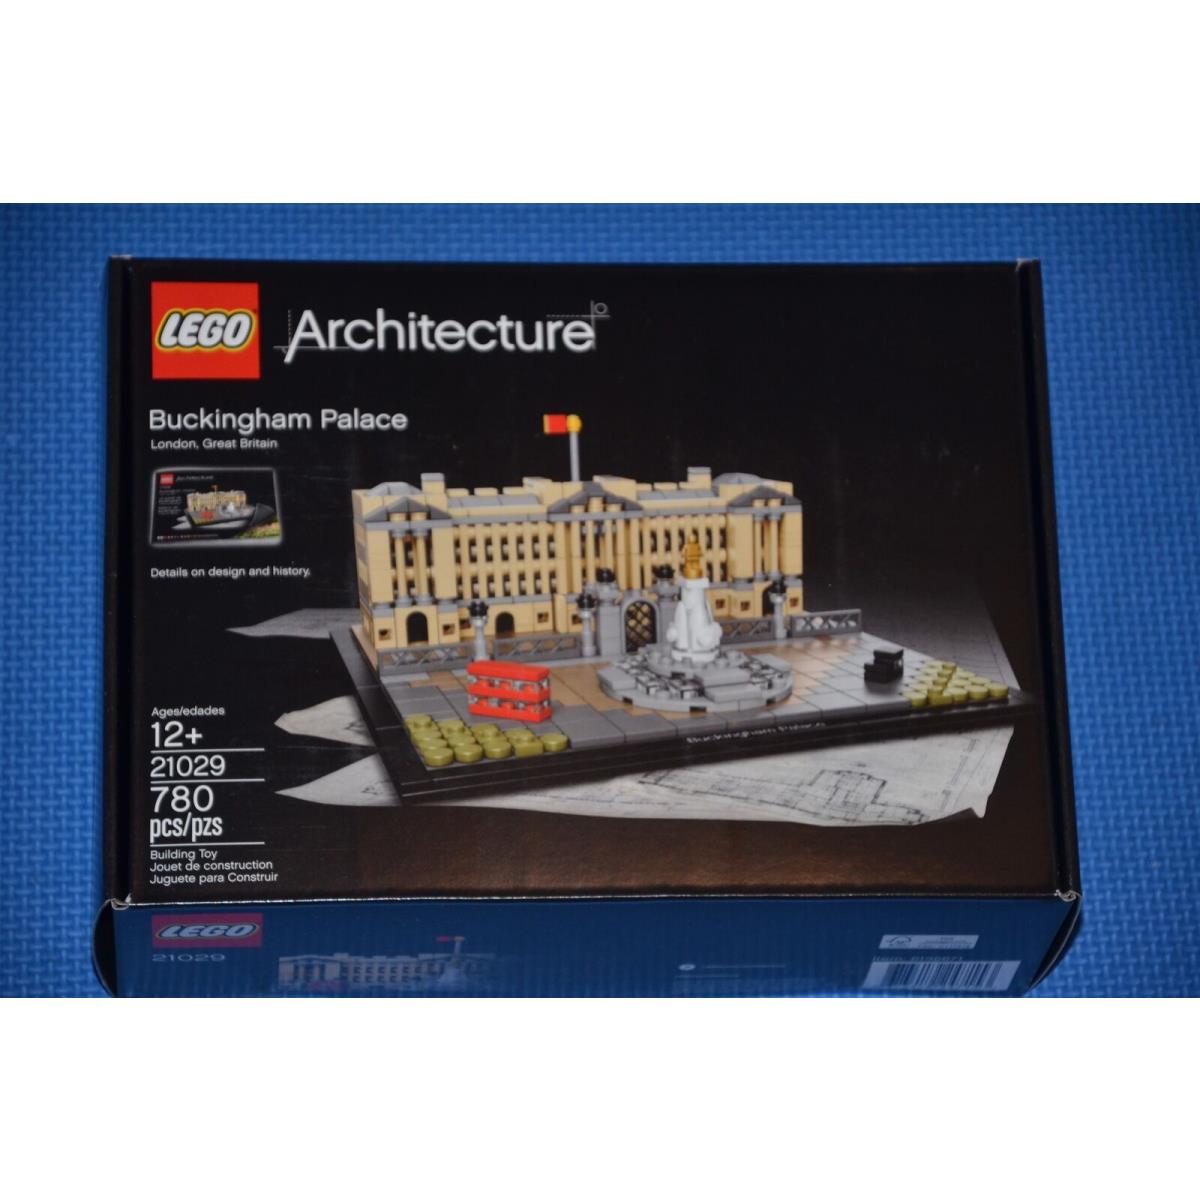 Lego 21029 Architecture Buckingham Palace Set